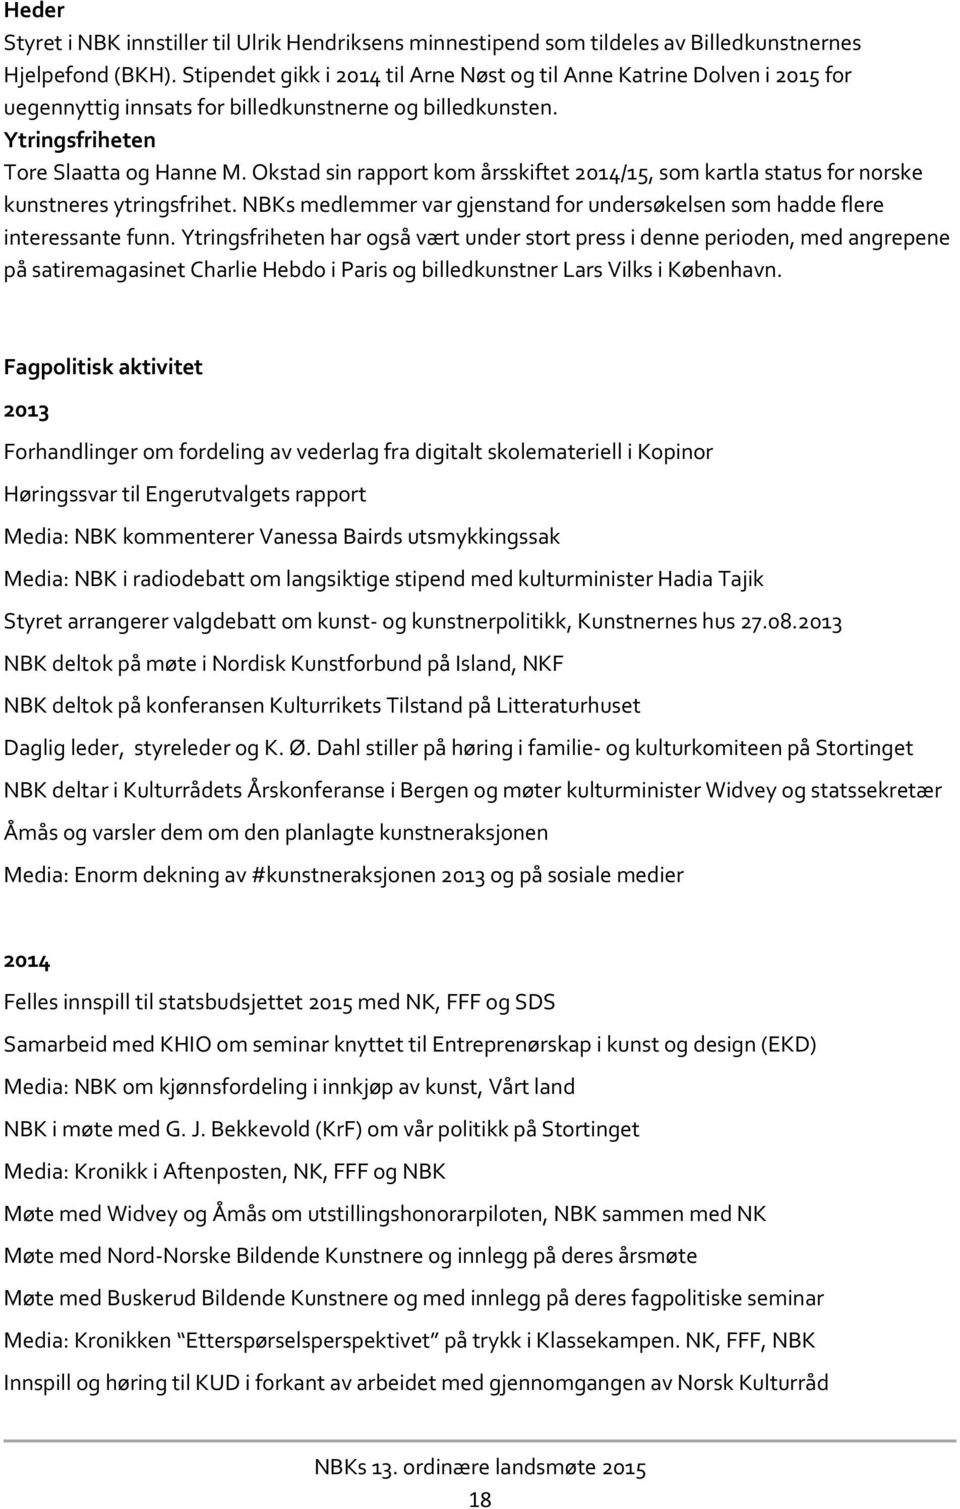 Okstad sin rapport kom årsskiftet 2014/15, som kartla status for norske kunstneres ytringsfrihet. NBKs medlemmer var gjenstand for undersøkelsen som hadde flere interessante funn.